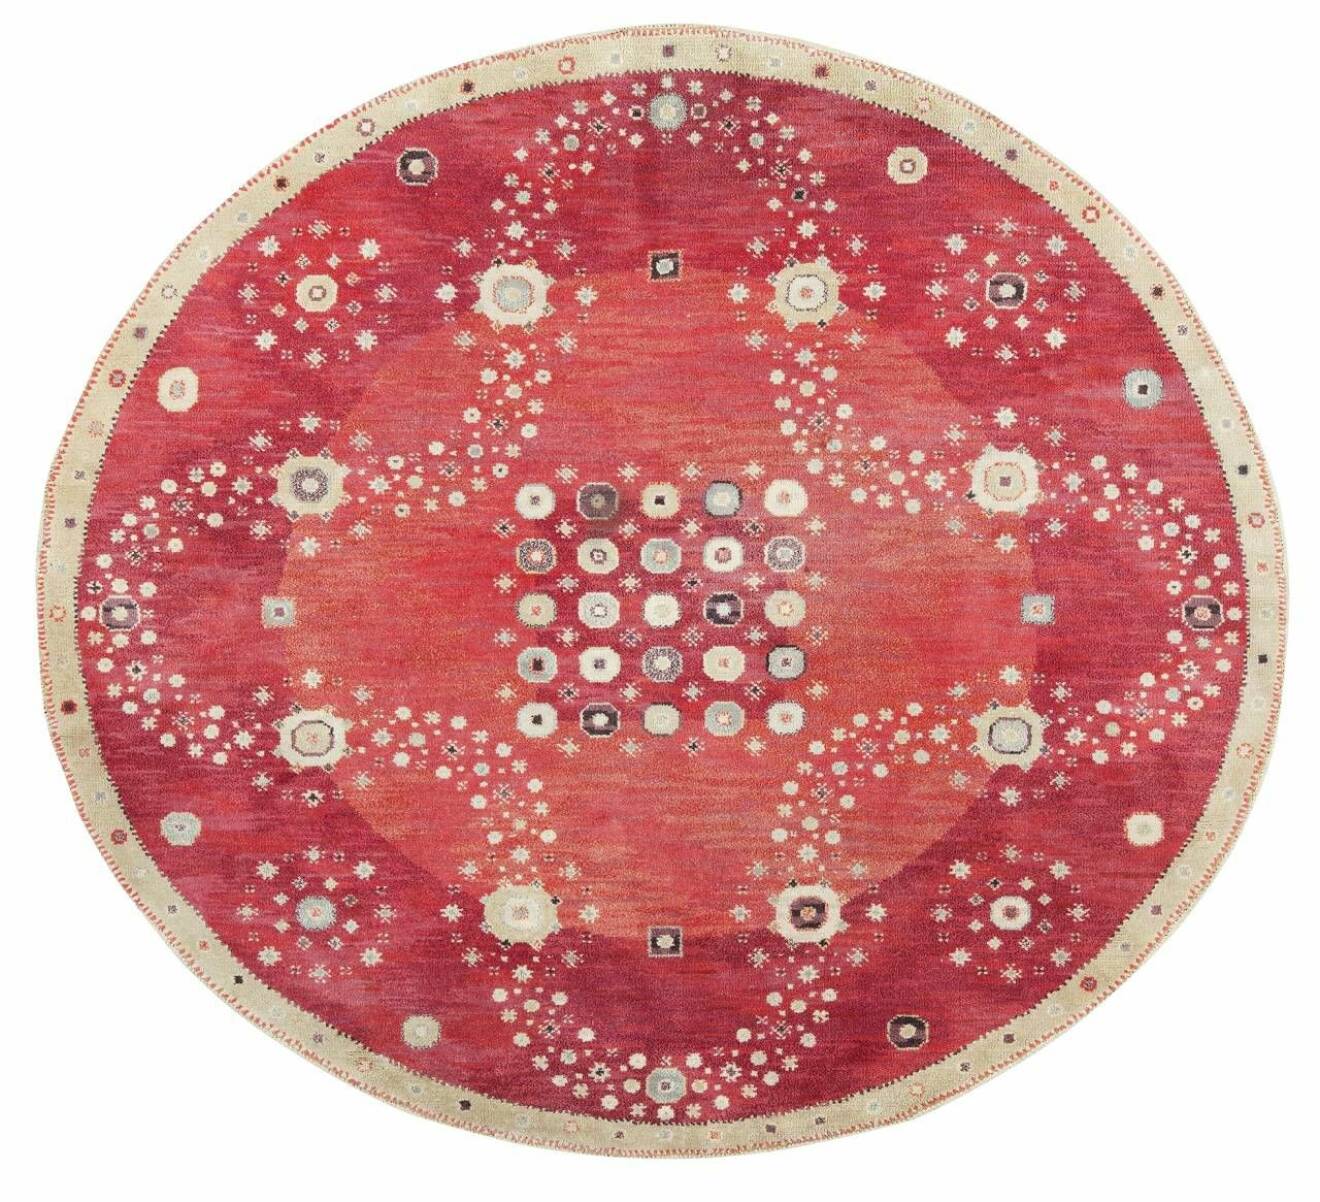 Den ovala flossan Röda rabatten med måtten 246x271 cm komponerades 1944.